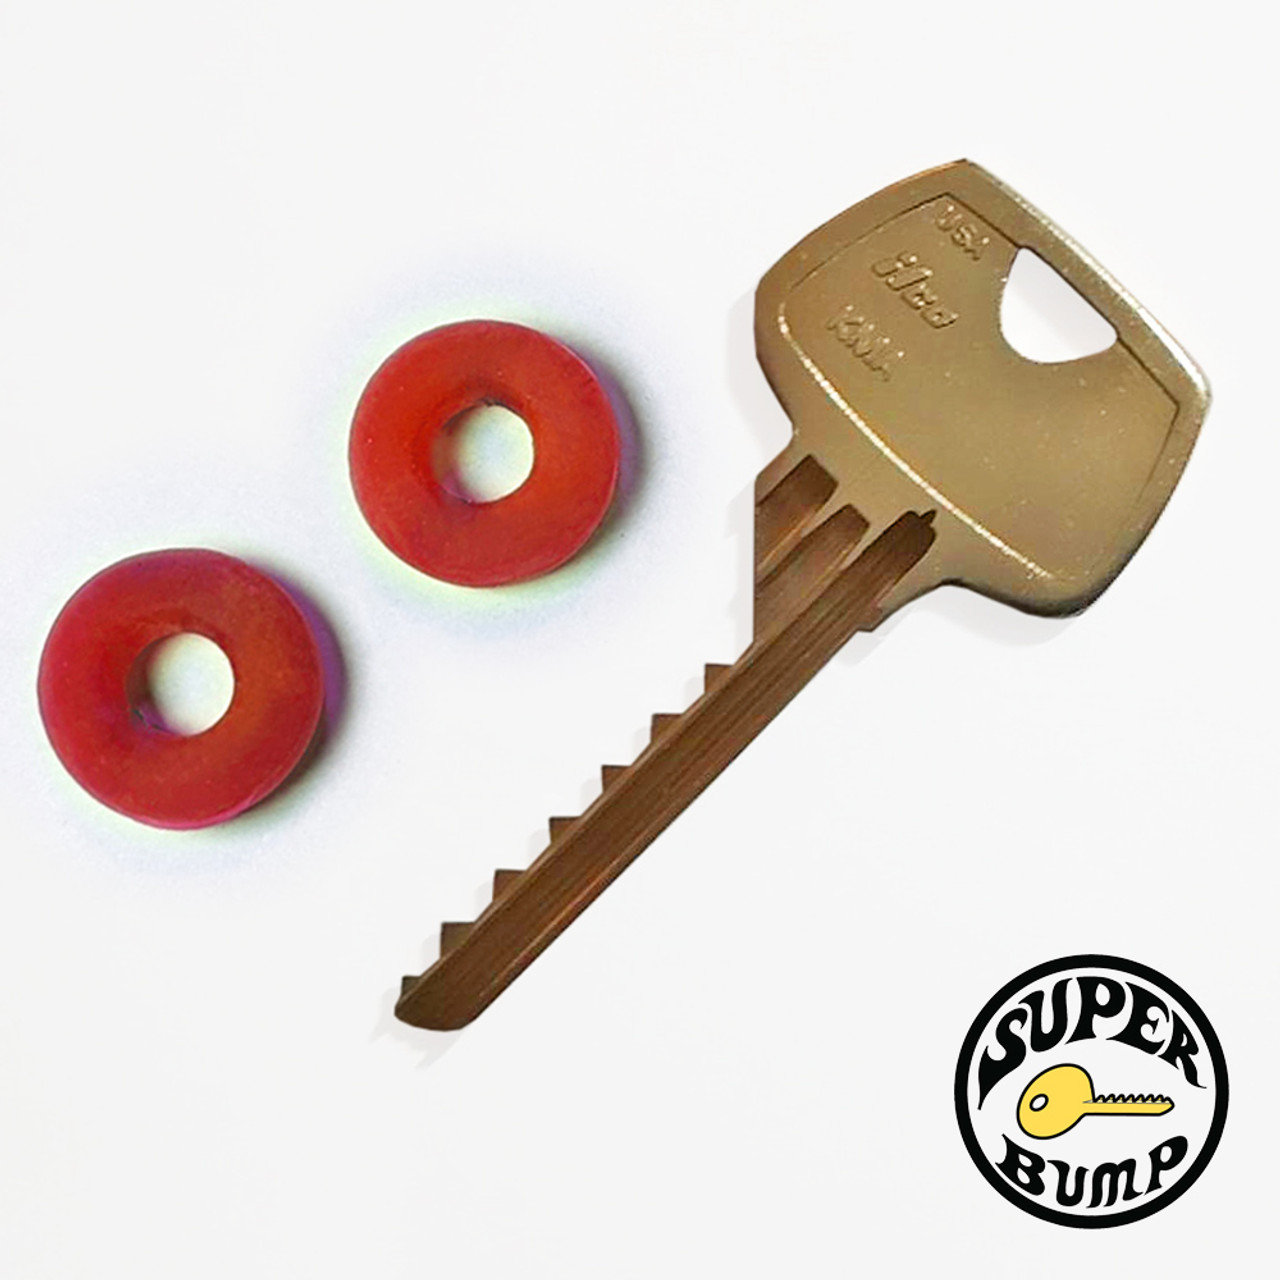 Rubber O-Ring for Bump Keys